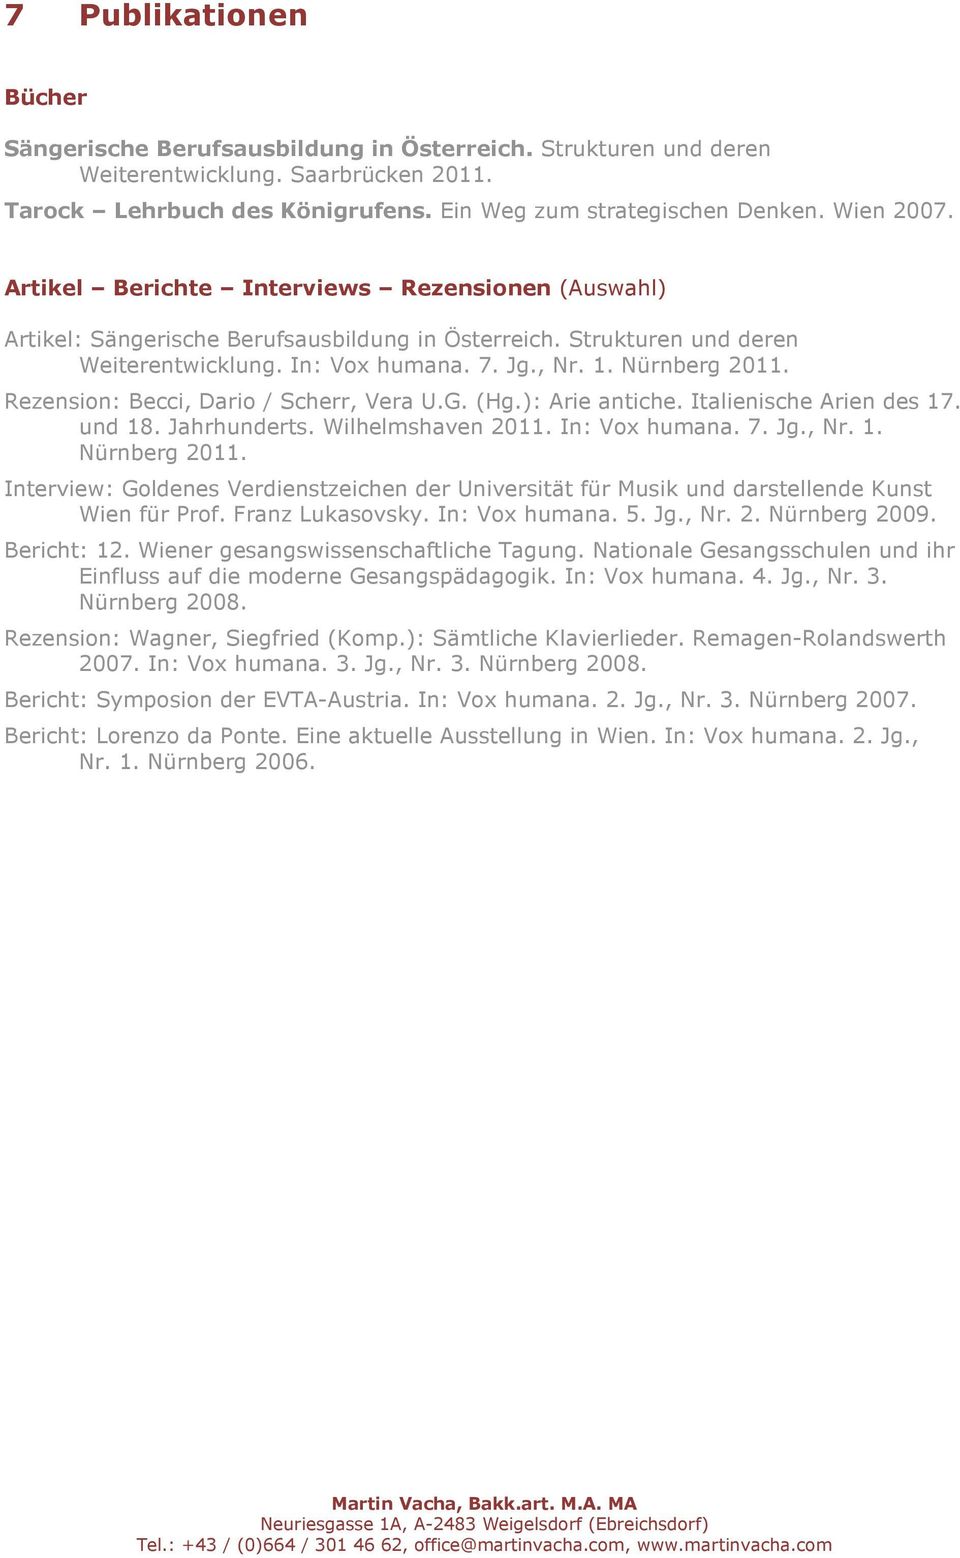 Rezension: Becci, Dario / Scherr, Vera U.G. (Hg.): Arie antiche. Italienische Arien des 17. und 18. Jahrhunderts. Wilhelmshaven 2011. In: Vox humana. 7. Jg., Nr. 1. Nürnberg 2011.